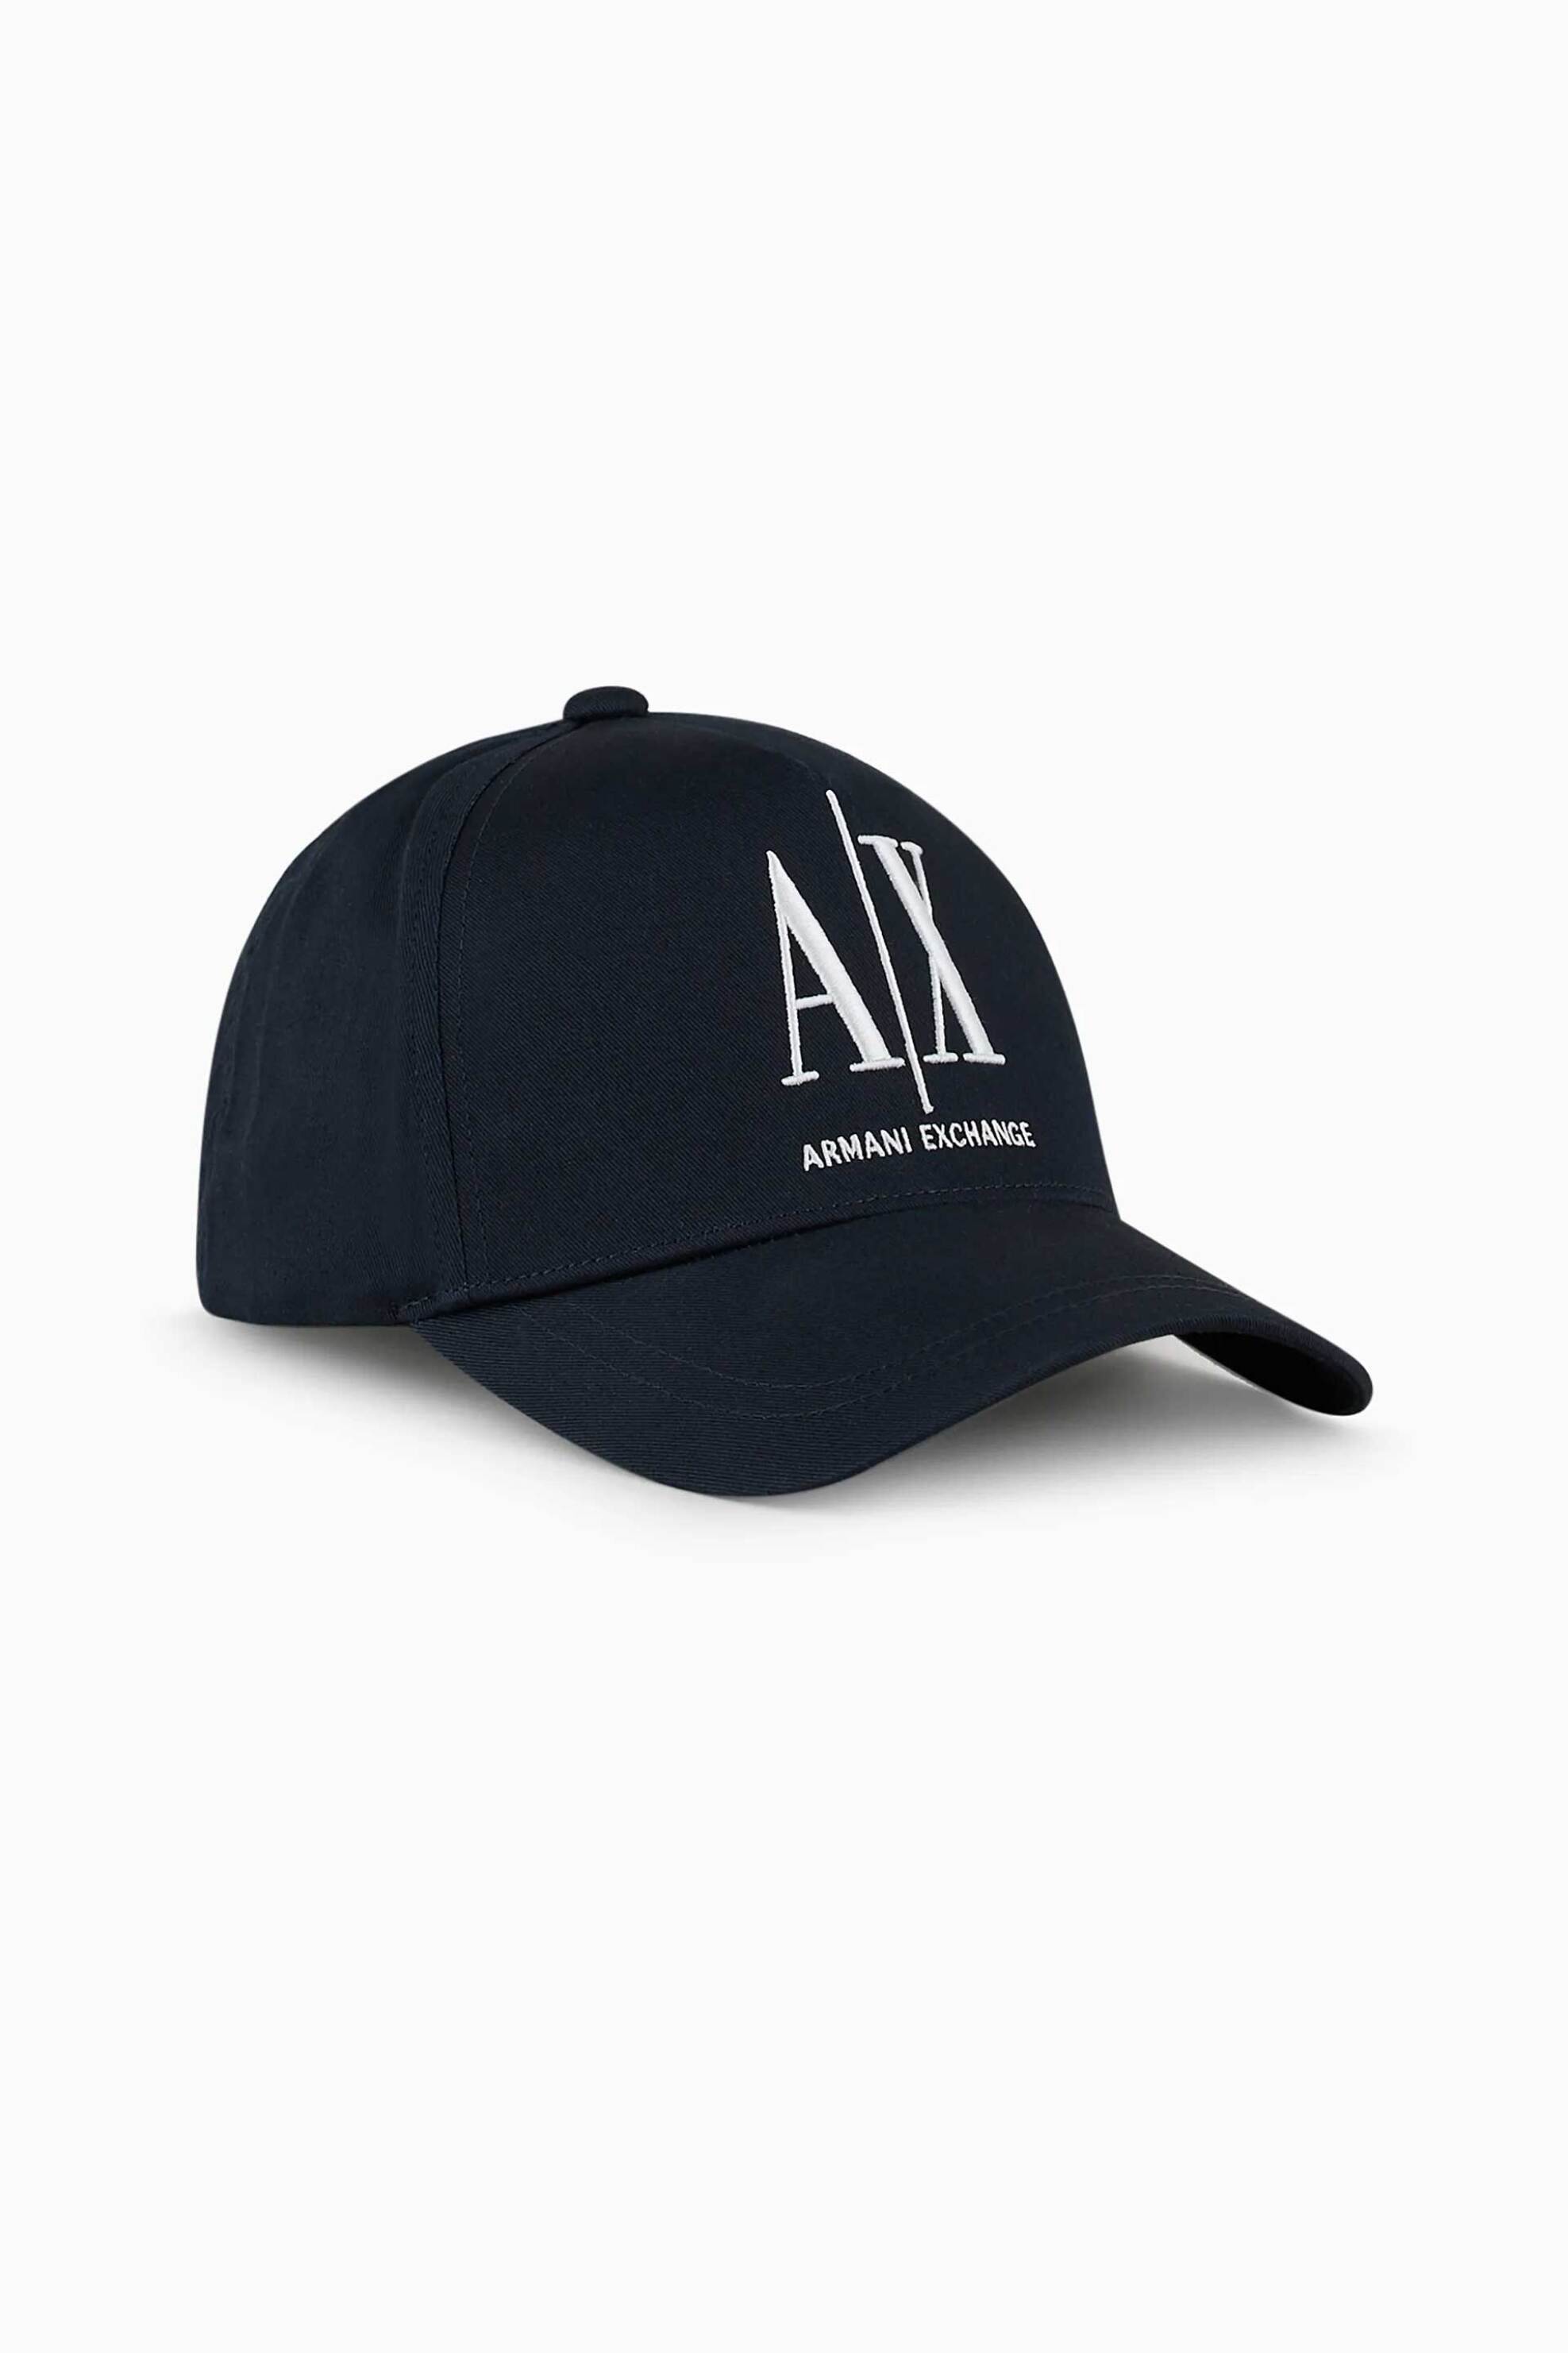 Ανδρική Μόδα > Ανδρικά Αξεσουάρ > Ανδρικά Καπέλα & Σκούφοι Armani Exchange ανδρικό καπέλο με κεντημένο λογότυπο - 954047CC811 Μπλε Σκούρο